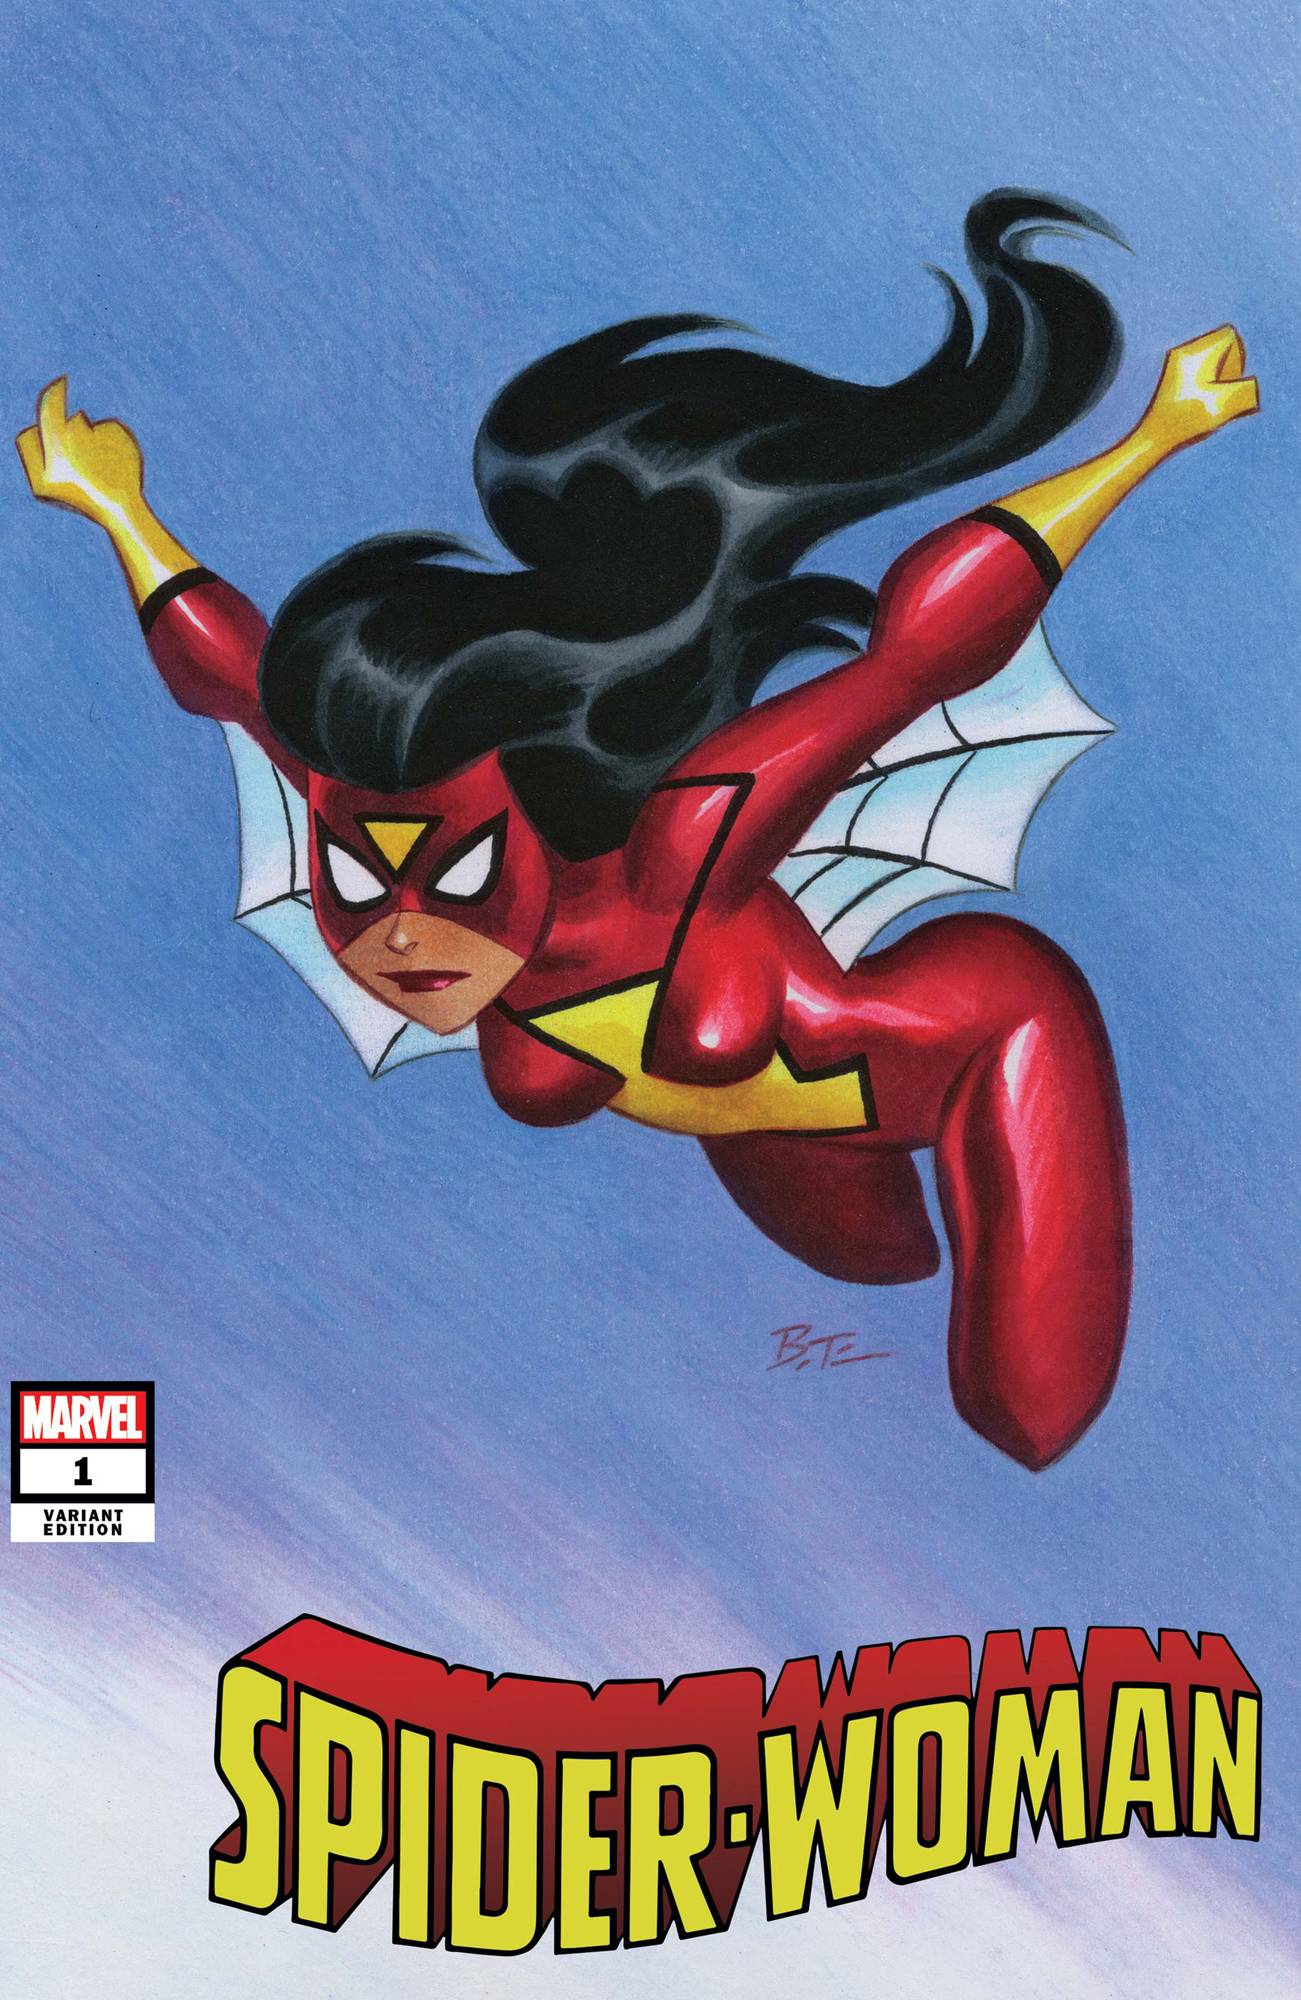 SPIDER-WOMAN #1 TIMM VAR | L.A. Mood Comics and Games